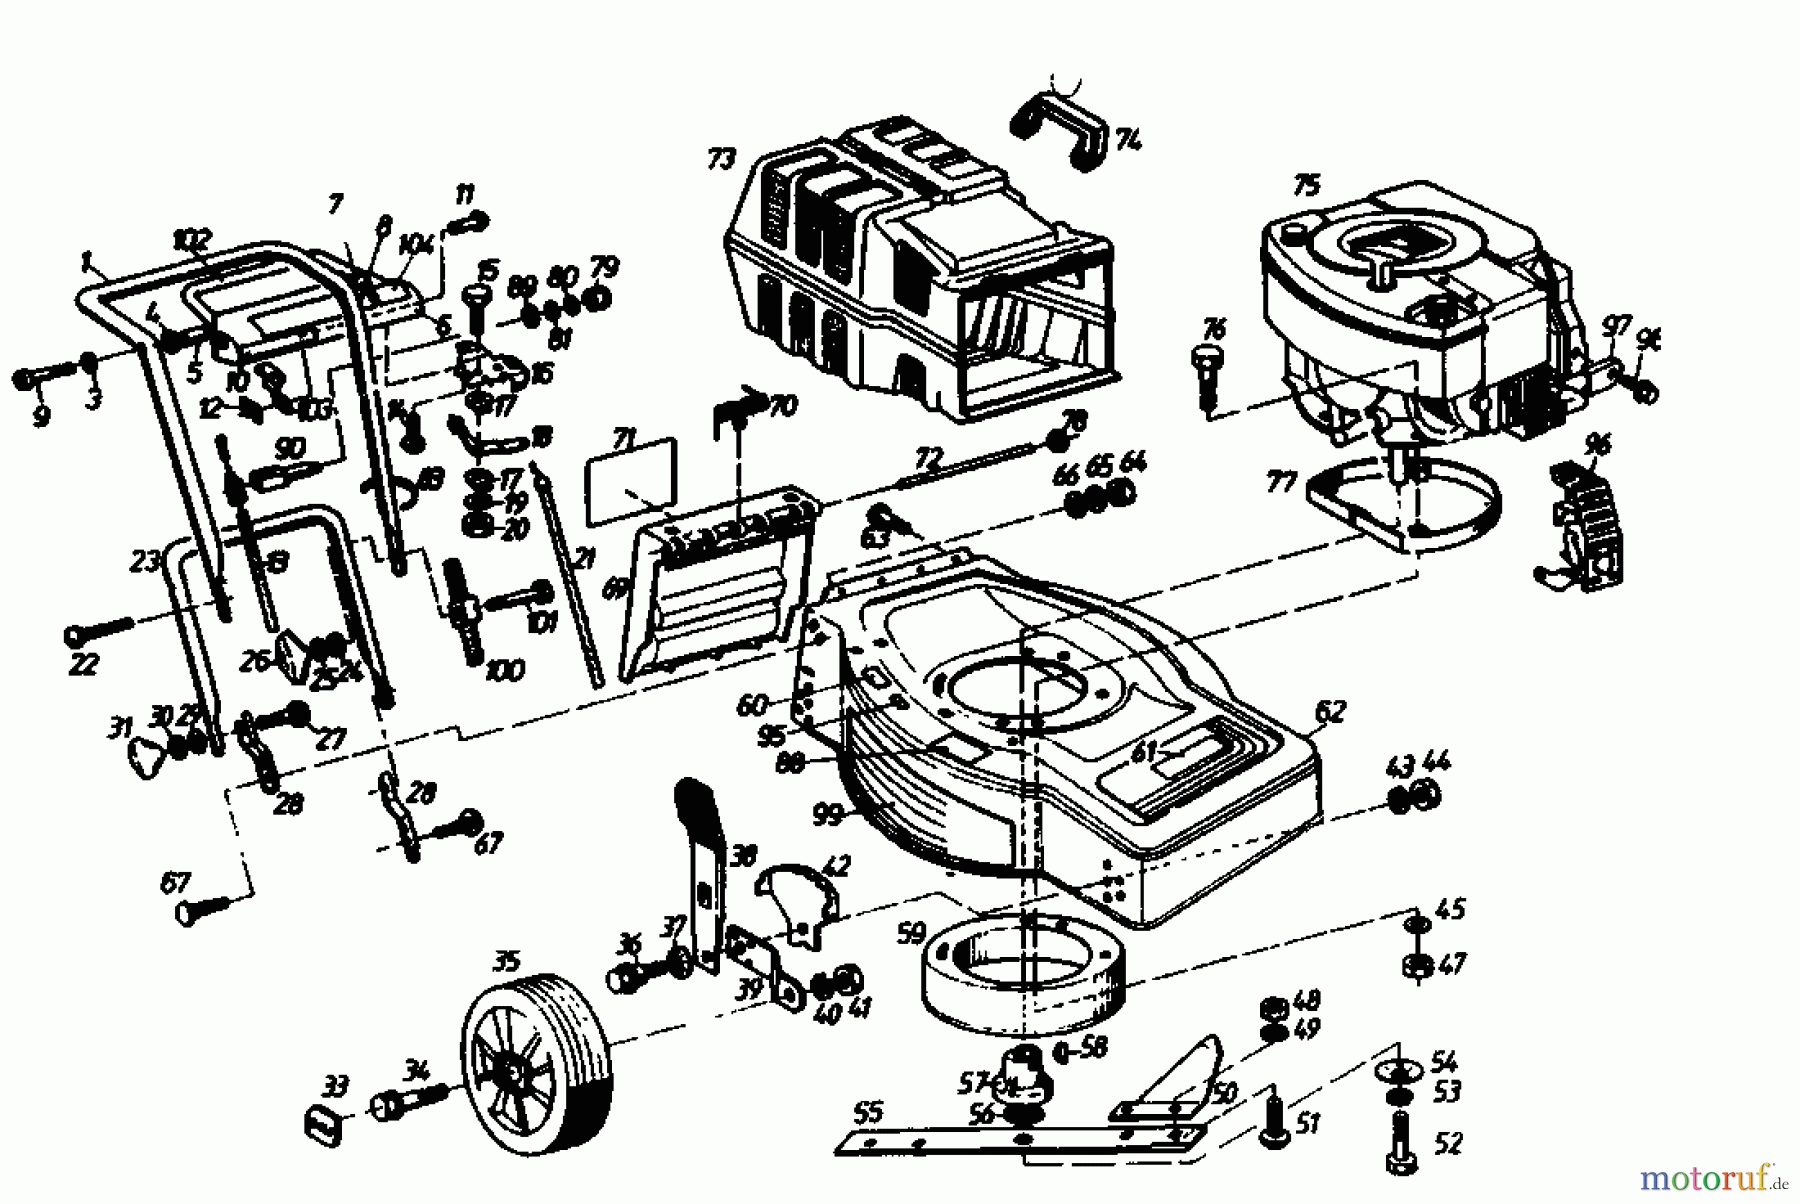  Golf Motormäher mit Antrieb 245 HR 4 02647.05  (1989) Grundgerät